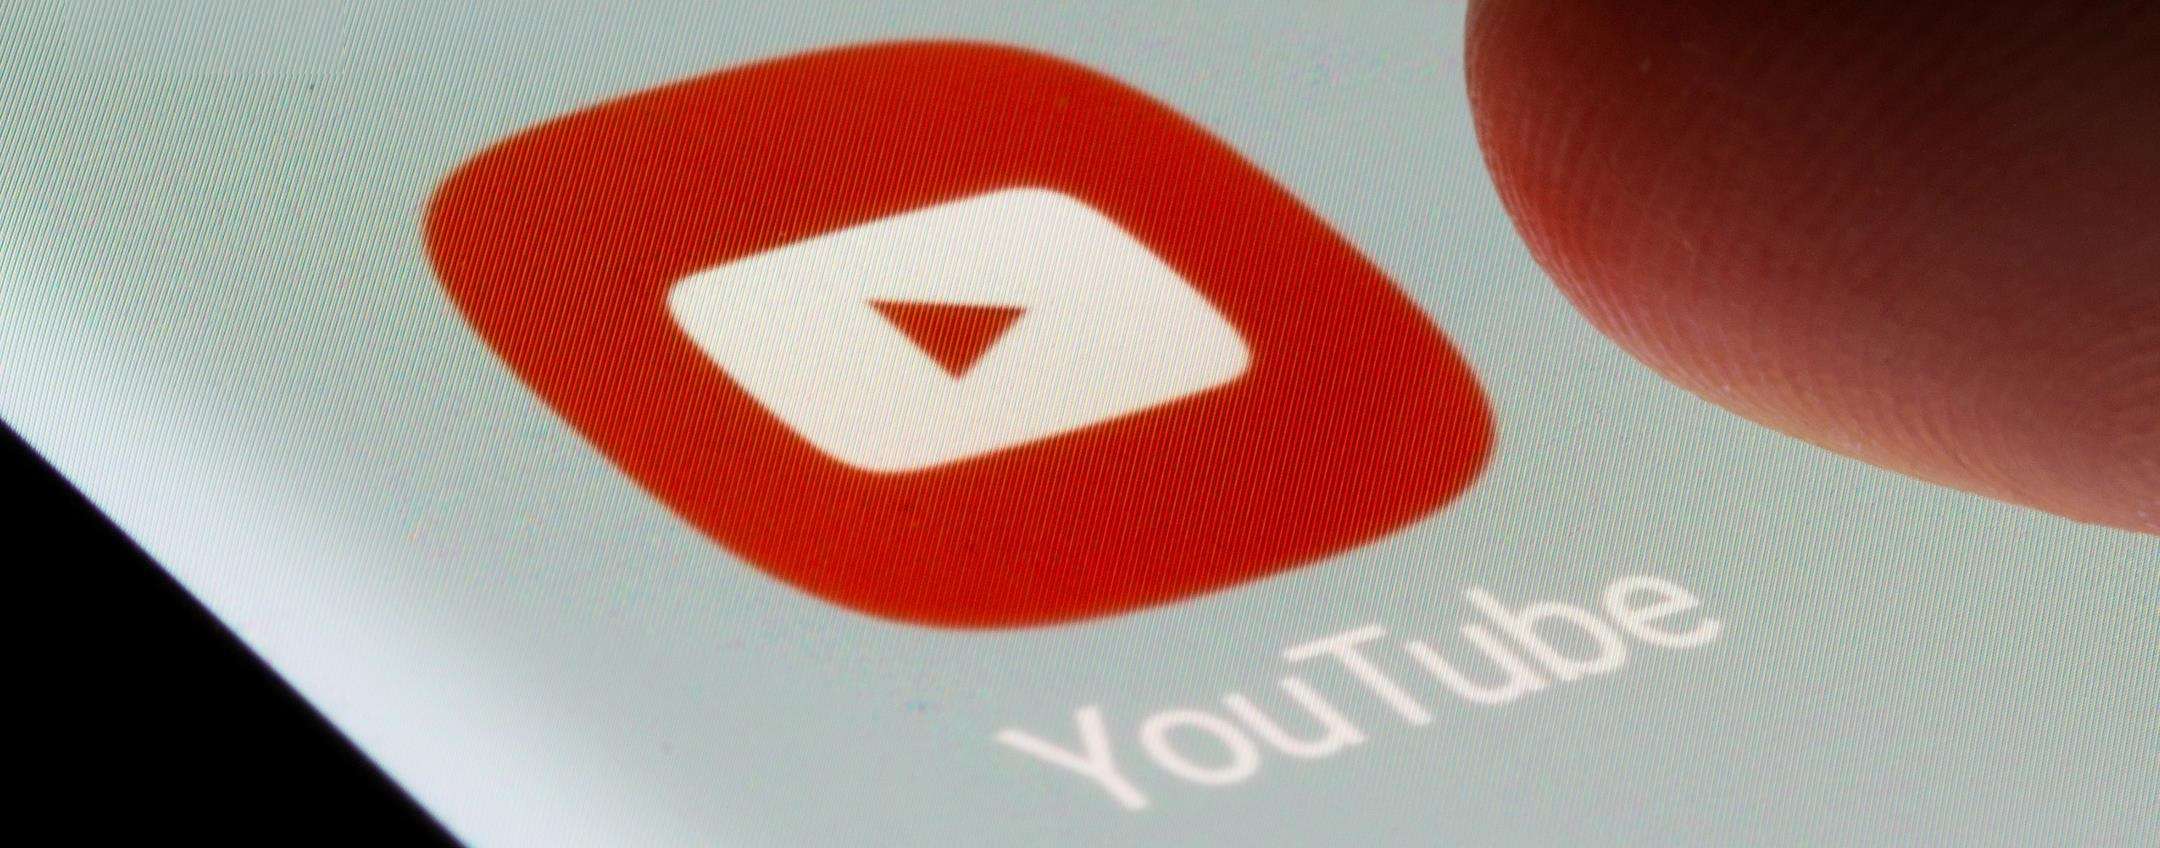 Youtube introduce una novità che ricorda parecchio TikTok ed Instagram